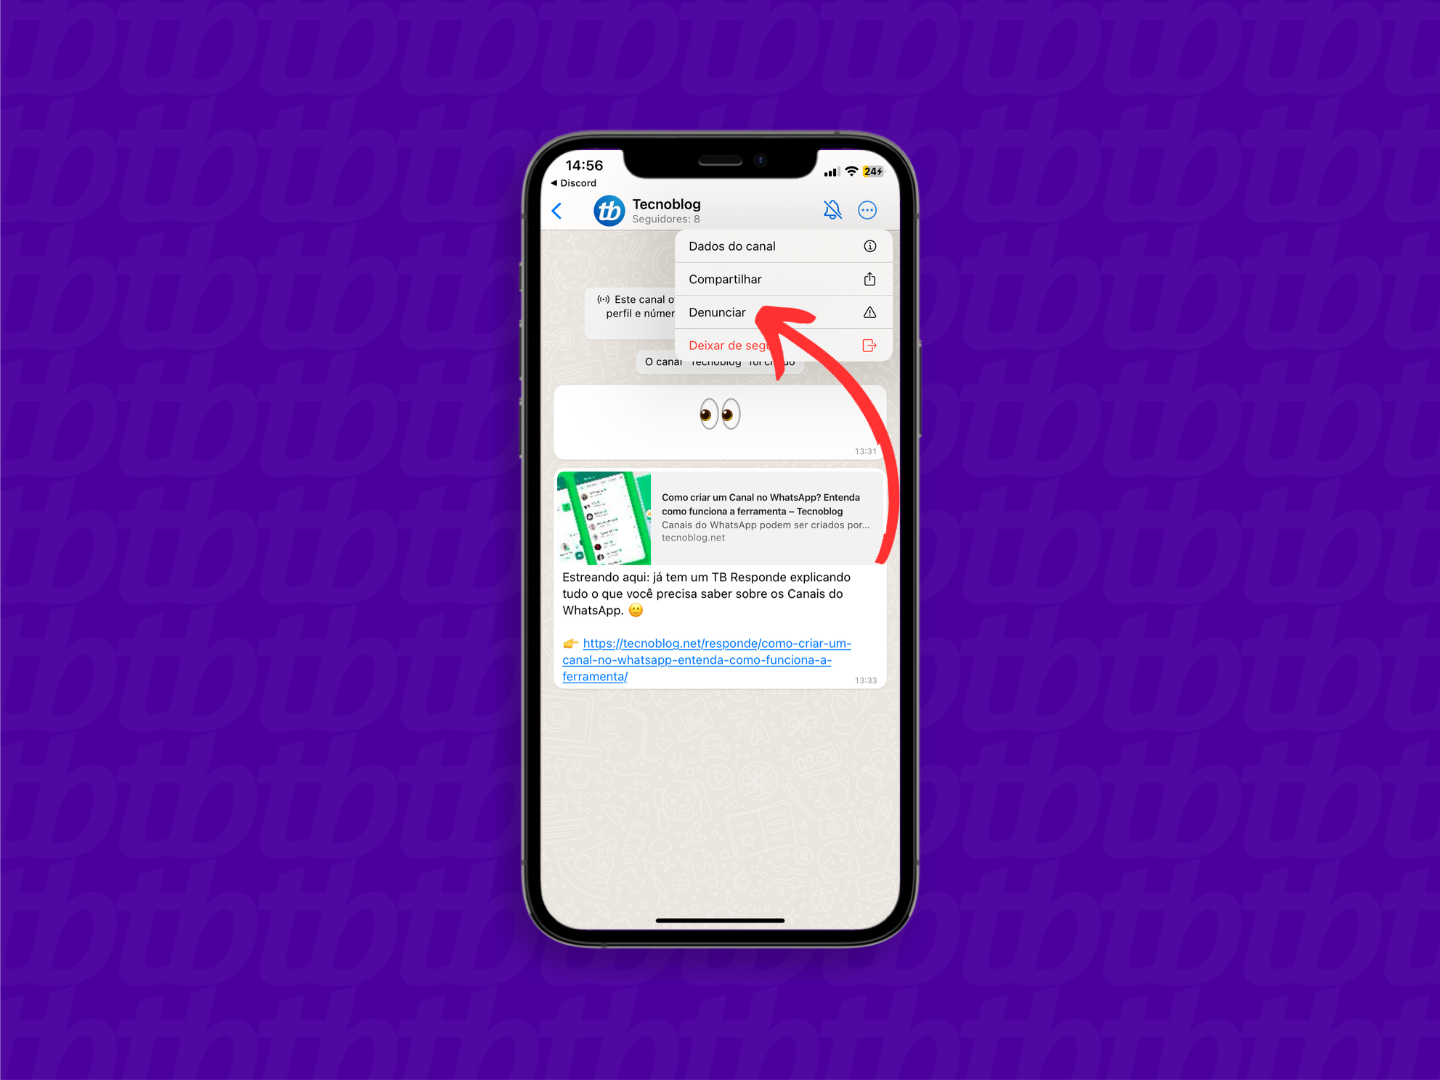 Mockup de iPhone com print de tela de WhatsApp que mostra o novo canal do tecnoblog. Após tocar nos três pontos, localizado no canto inferior direito, é possível denunciar um canal do WhatsApp.